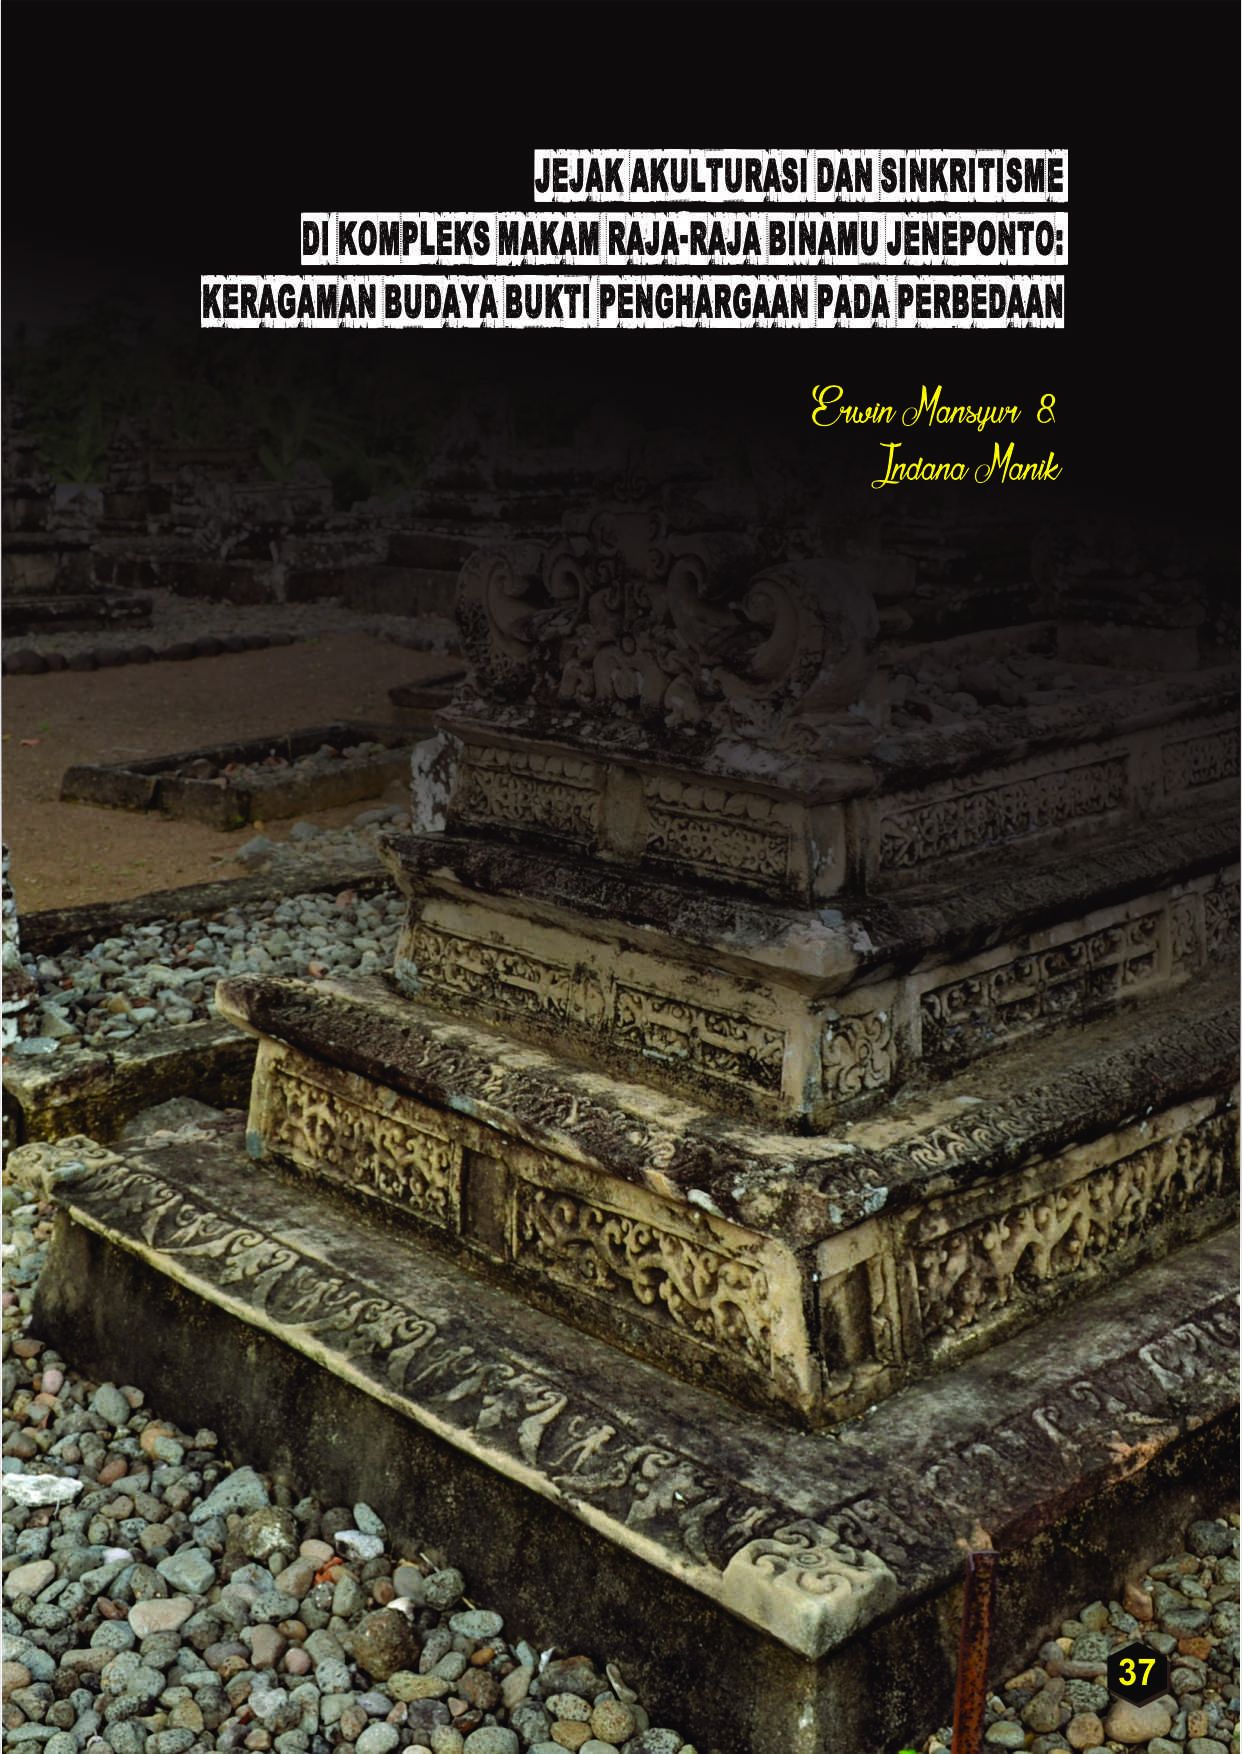 Read more about the article Jejak Akulturasi dan Sinkritisme di Kompleks Makam Raja-Raja Binamu Jeneponto: keragaman budaya bukti penghargaan pada perbedaan